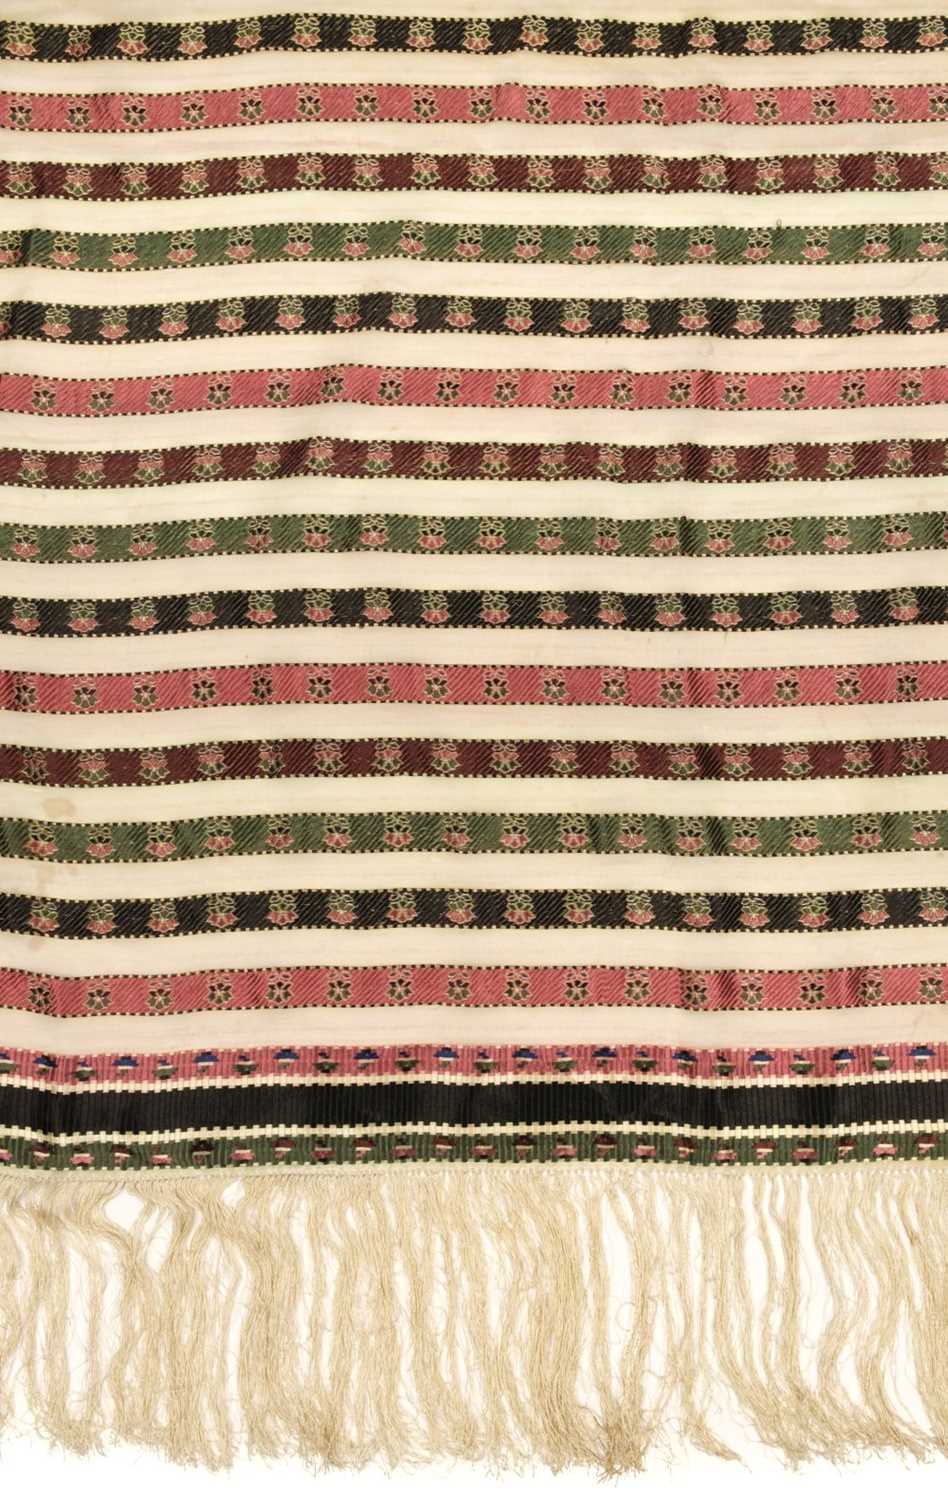 Lot 303 - Shawl. A woven silk satin and gauze shawl, circa 1810-1820